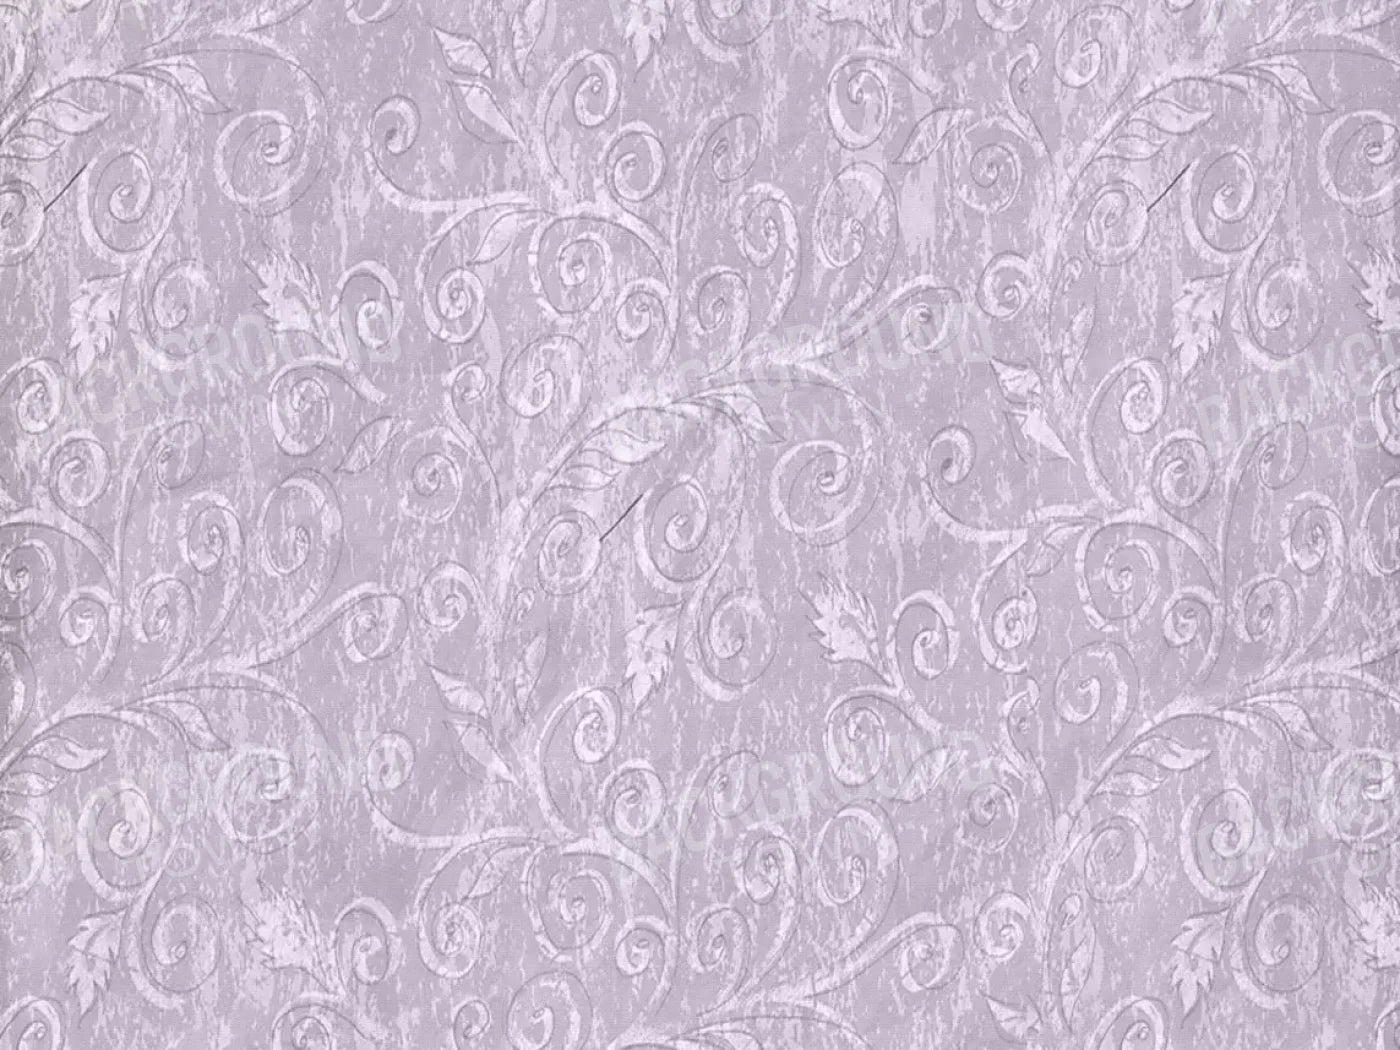 Frolic Purple 68X5 Fleece ( 80 X 60 Inch ) Backdrop